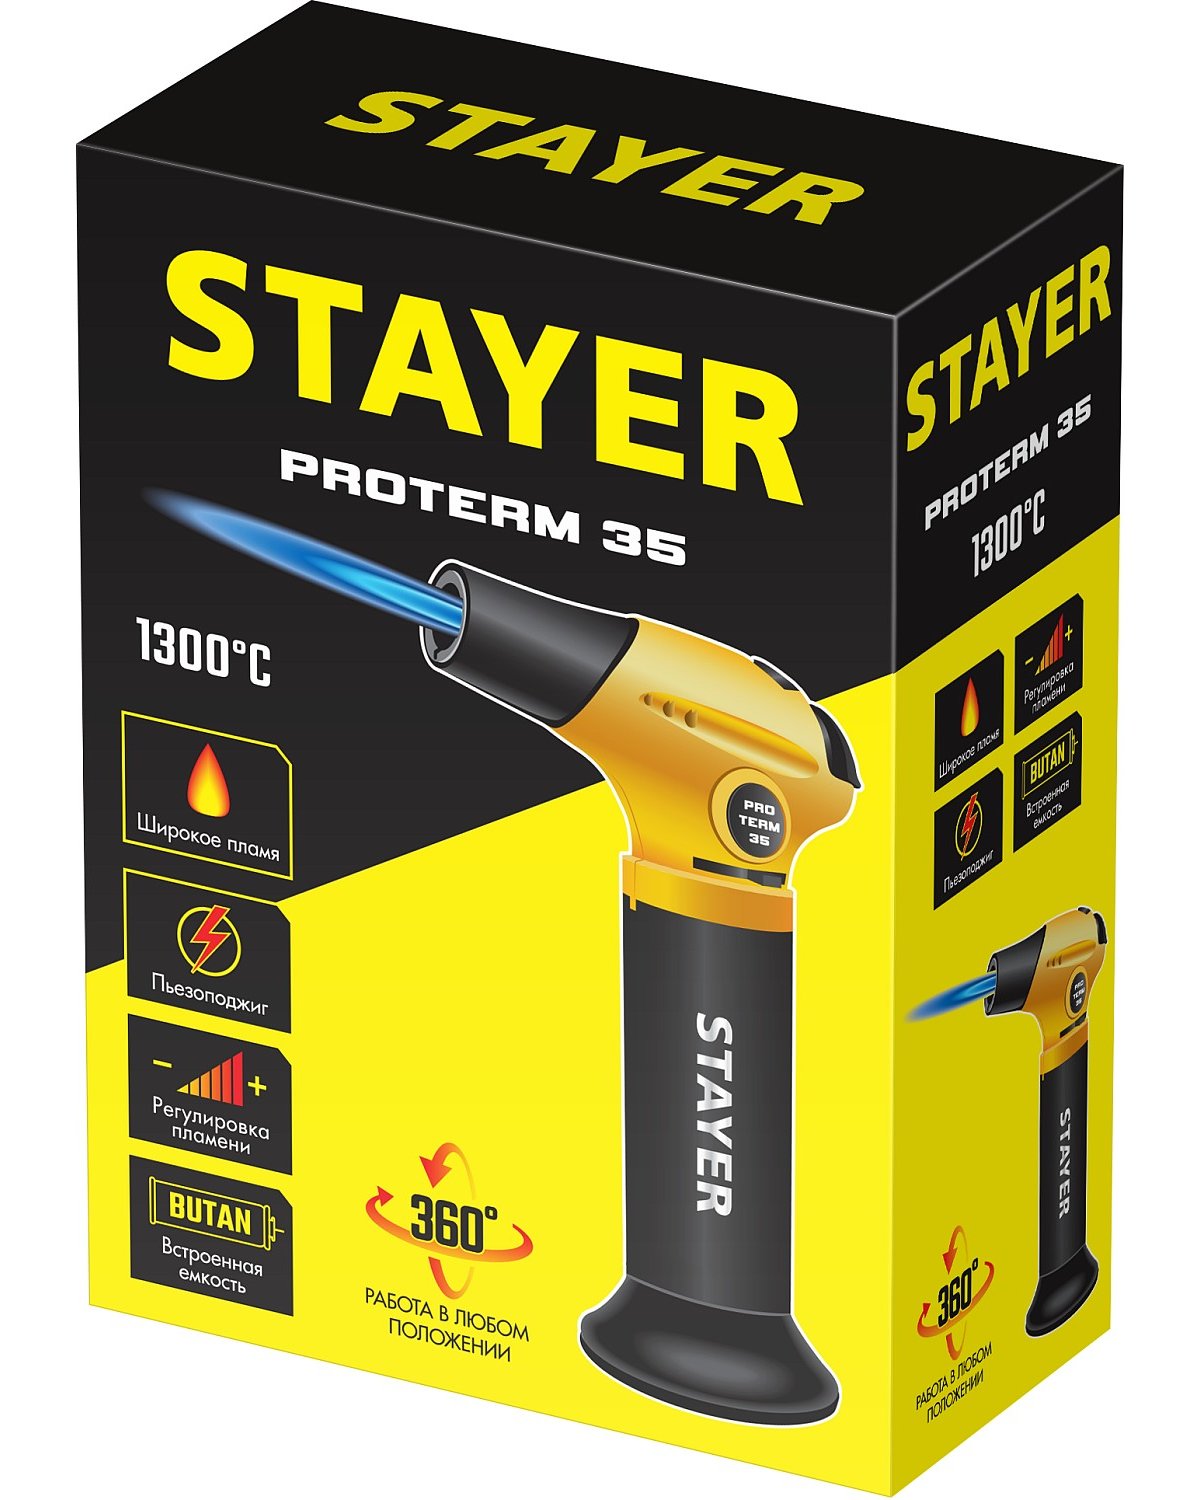 STAYER ProTerm 35 автономная портативная газовая горелка с пьезоподжигом, 1300С. (55522)